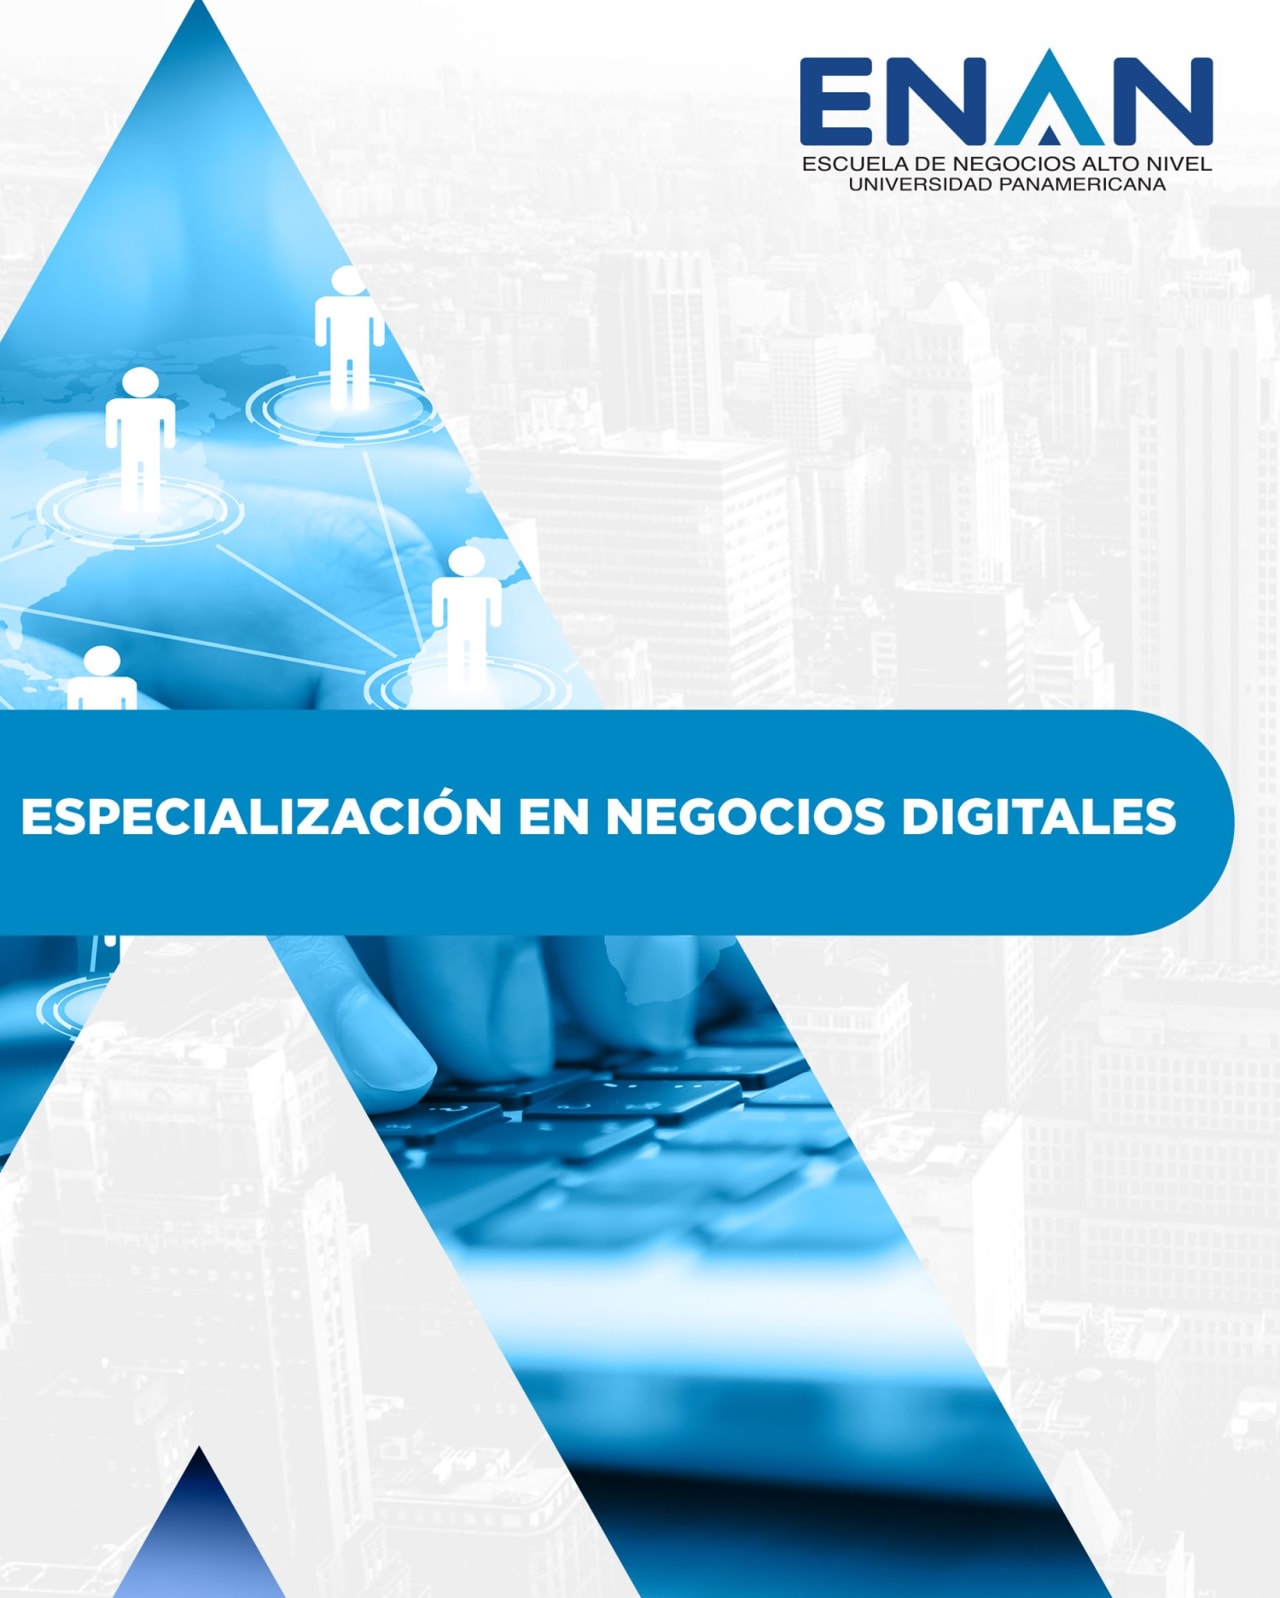 Escuela de Negocios Alto Nivel - Universidad Panamericana de Guatemala تخصص الأعمال الرقمية